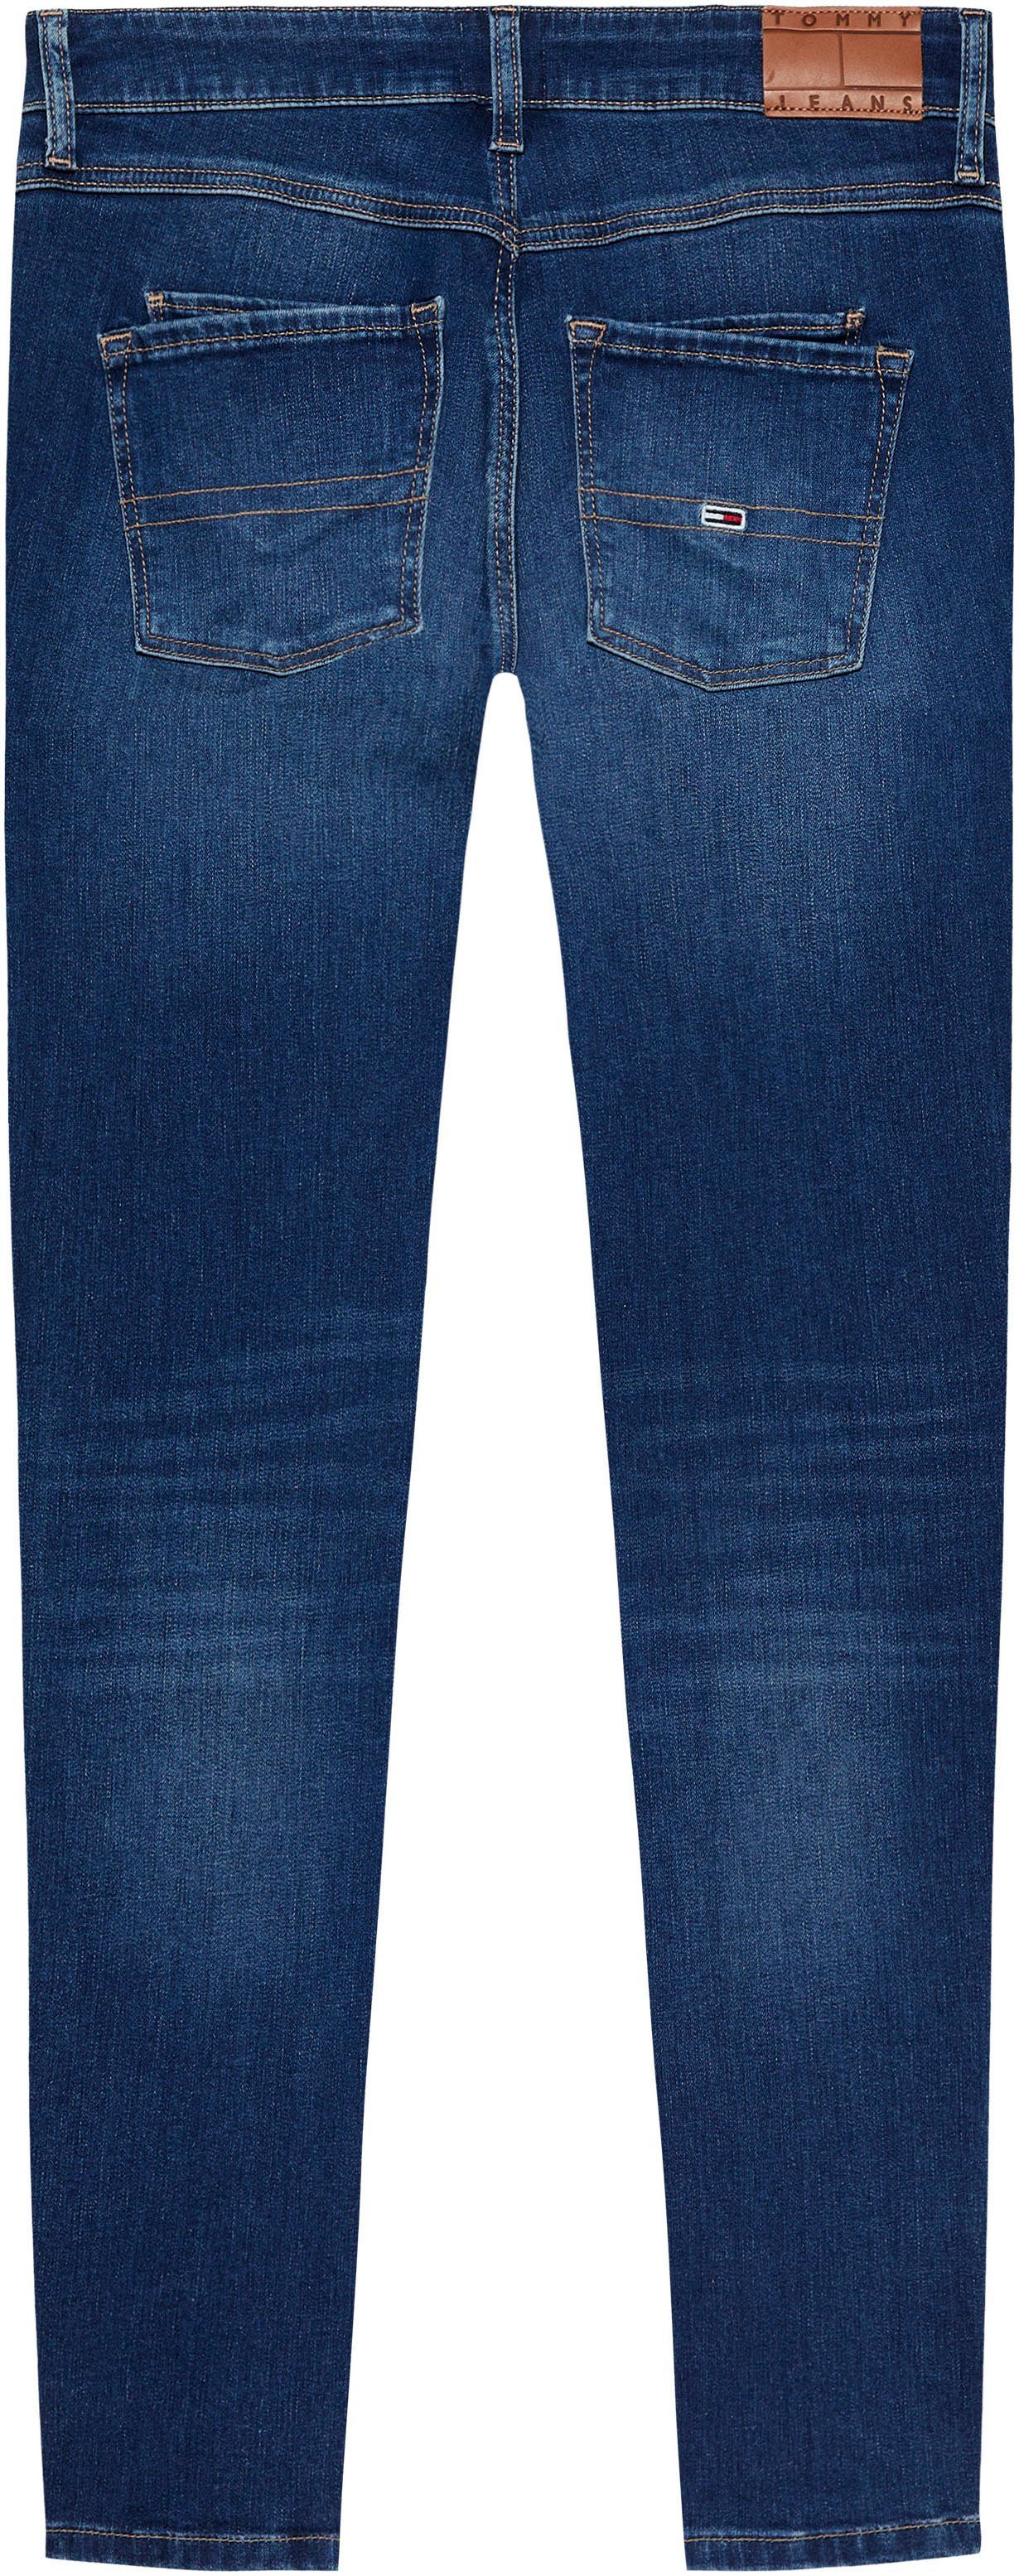 Tommy Jeans ZIP Lederlogopatch Skinny-fit-Jeans mit LW AH1239 SKN SCARLETT ANK